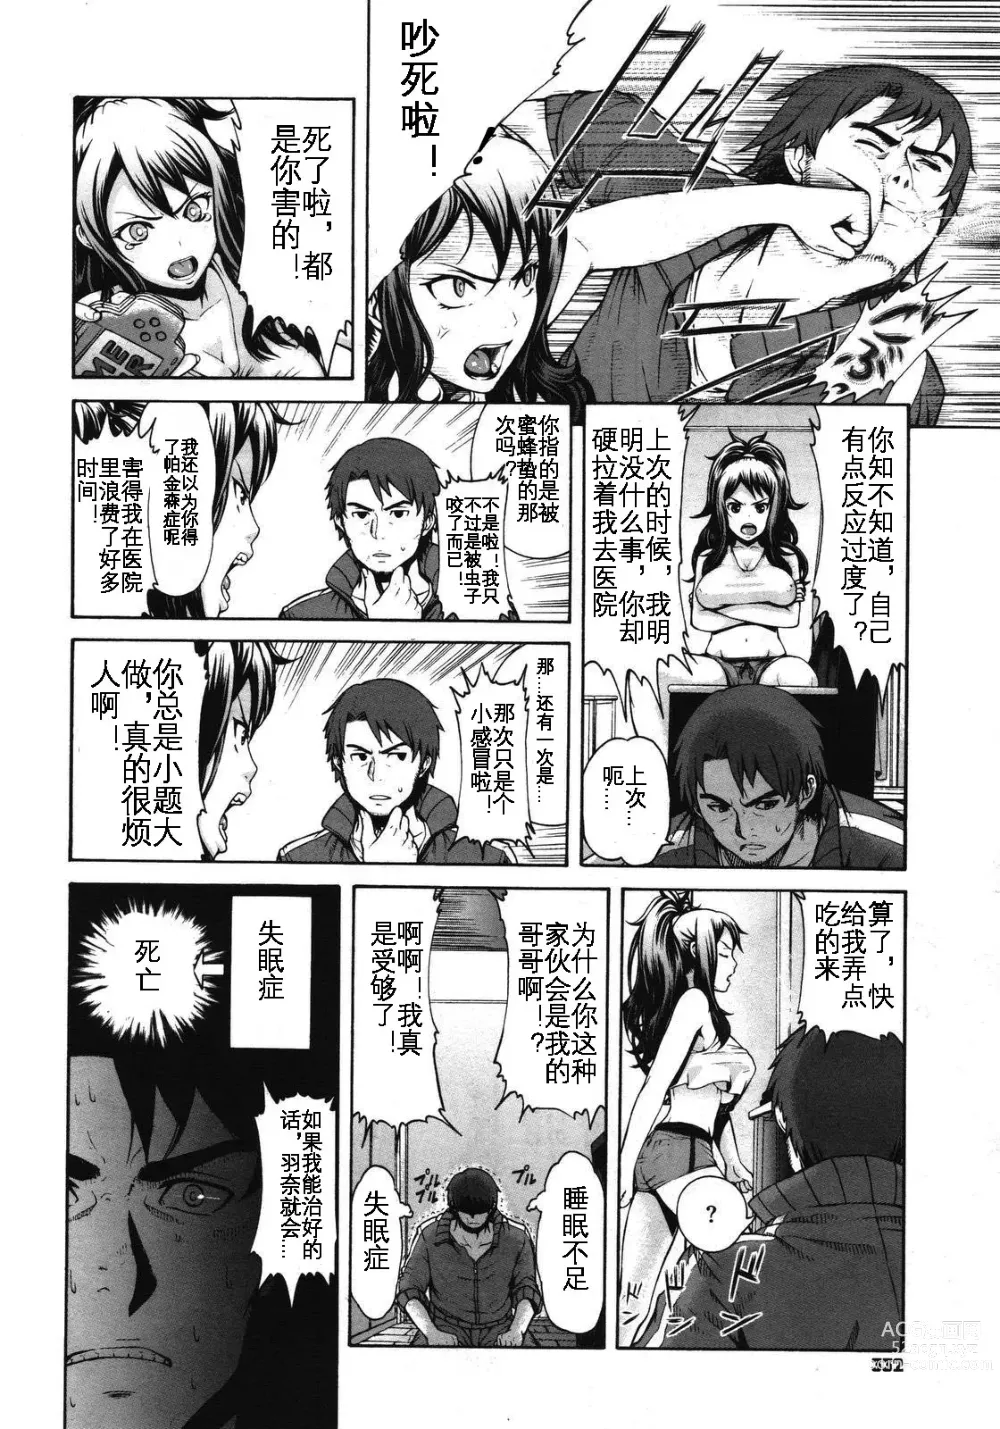 Page 5 of manga Konna Ani no Imouto Dakara   Animoca